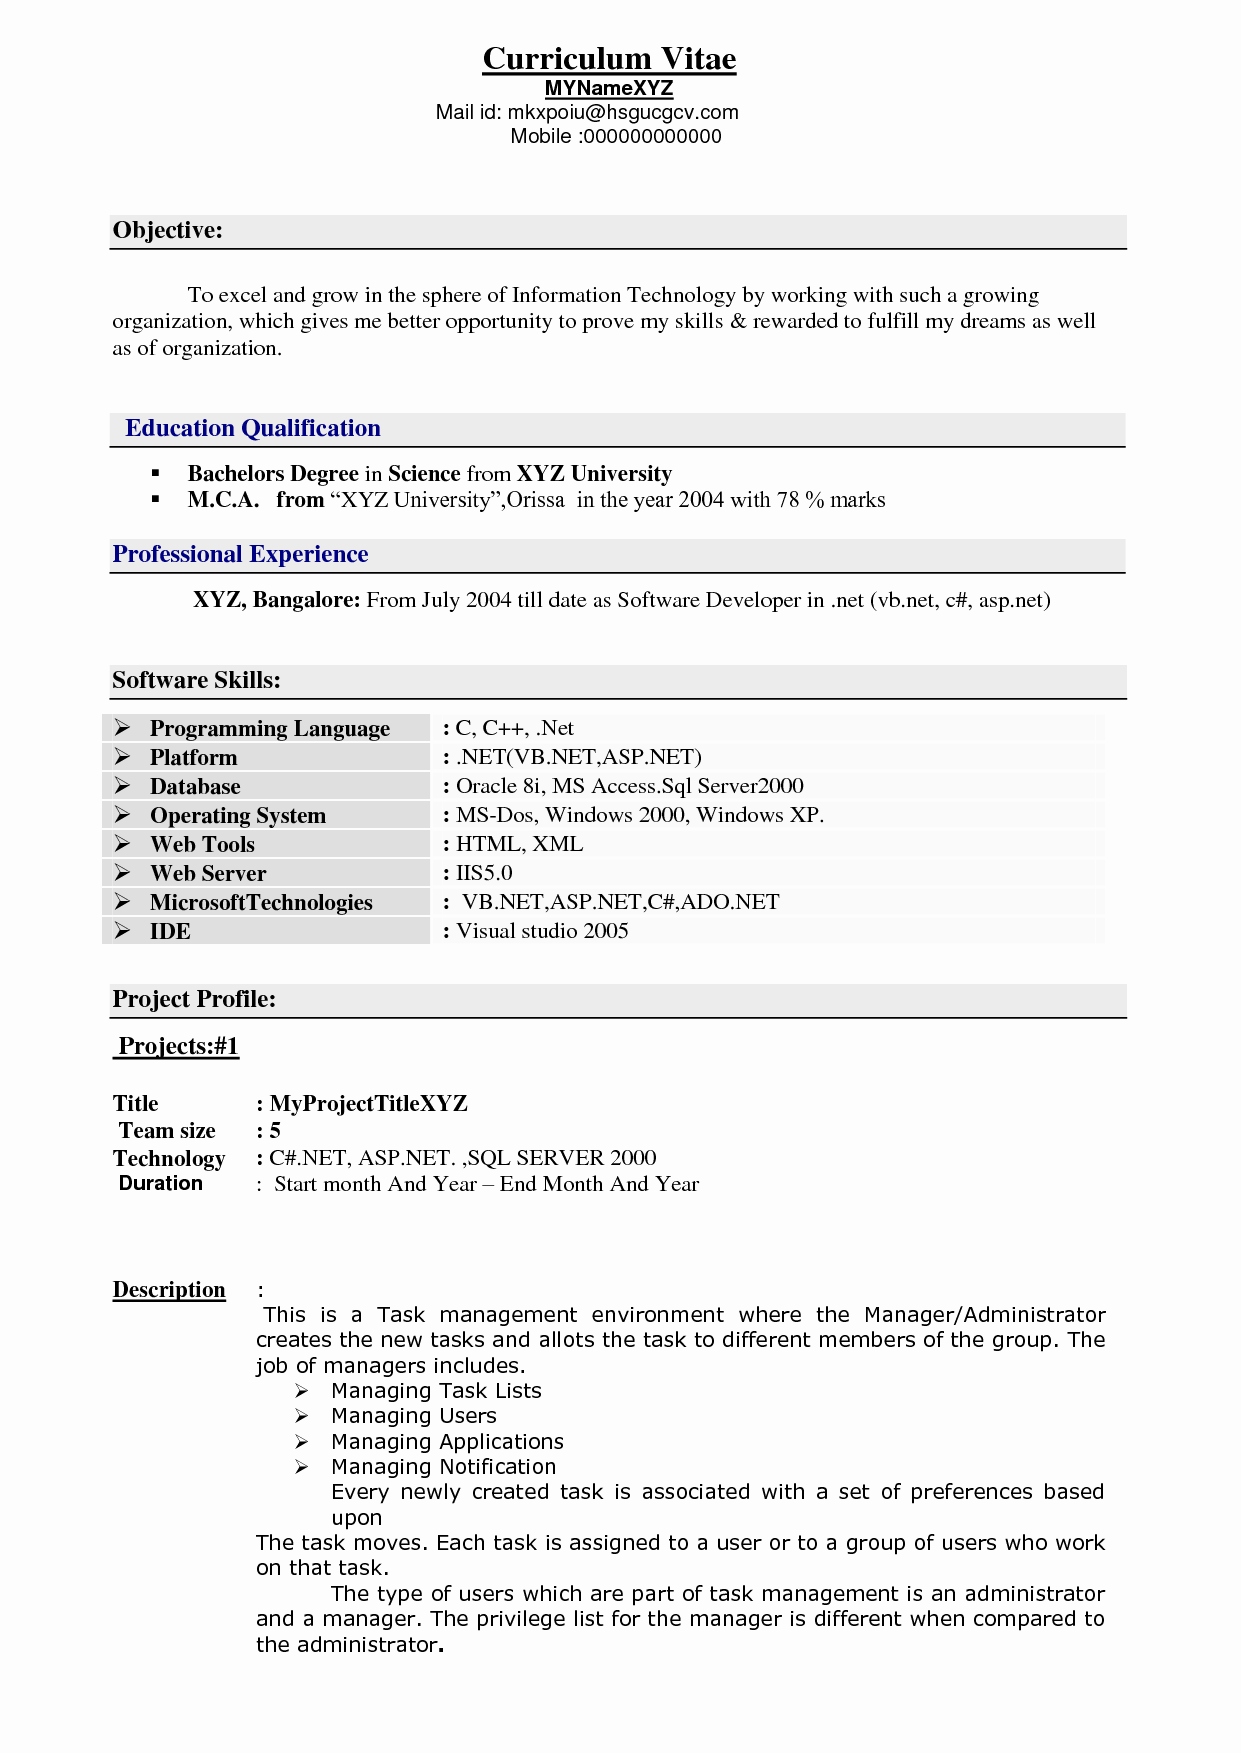 Experience Resume Format For Xml Developer 